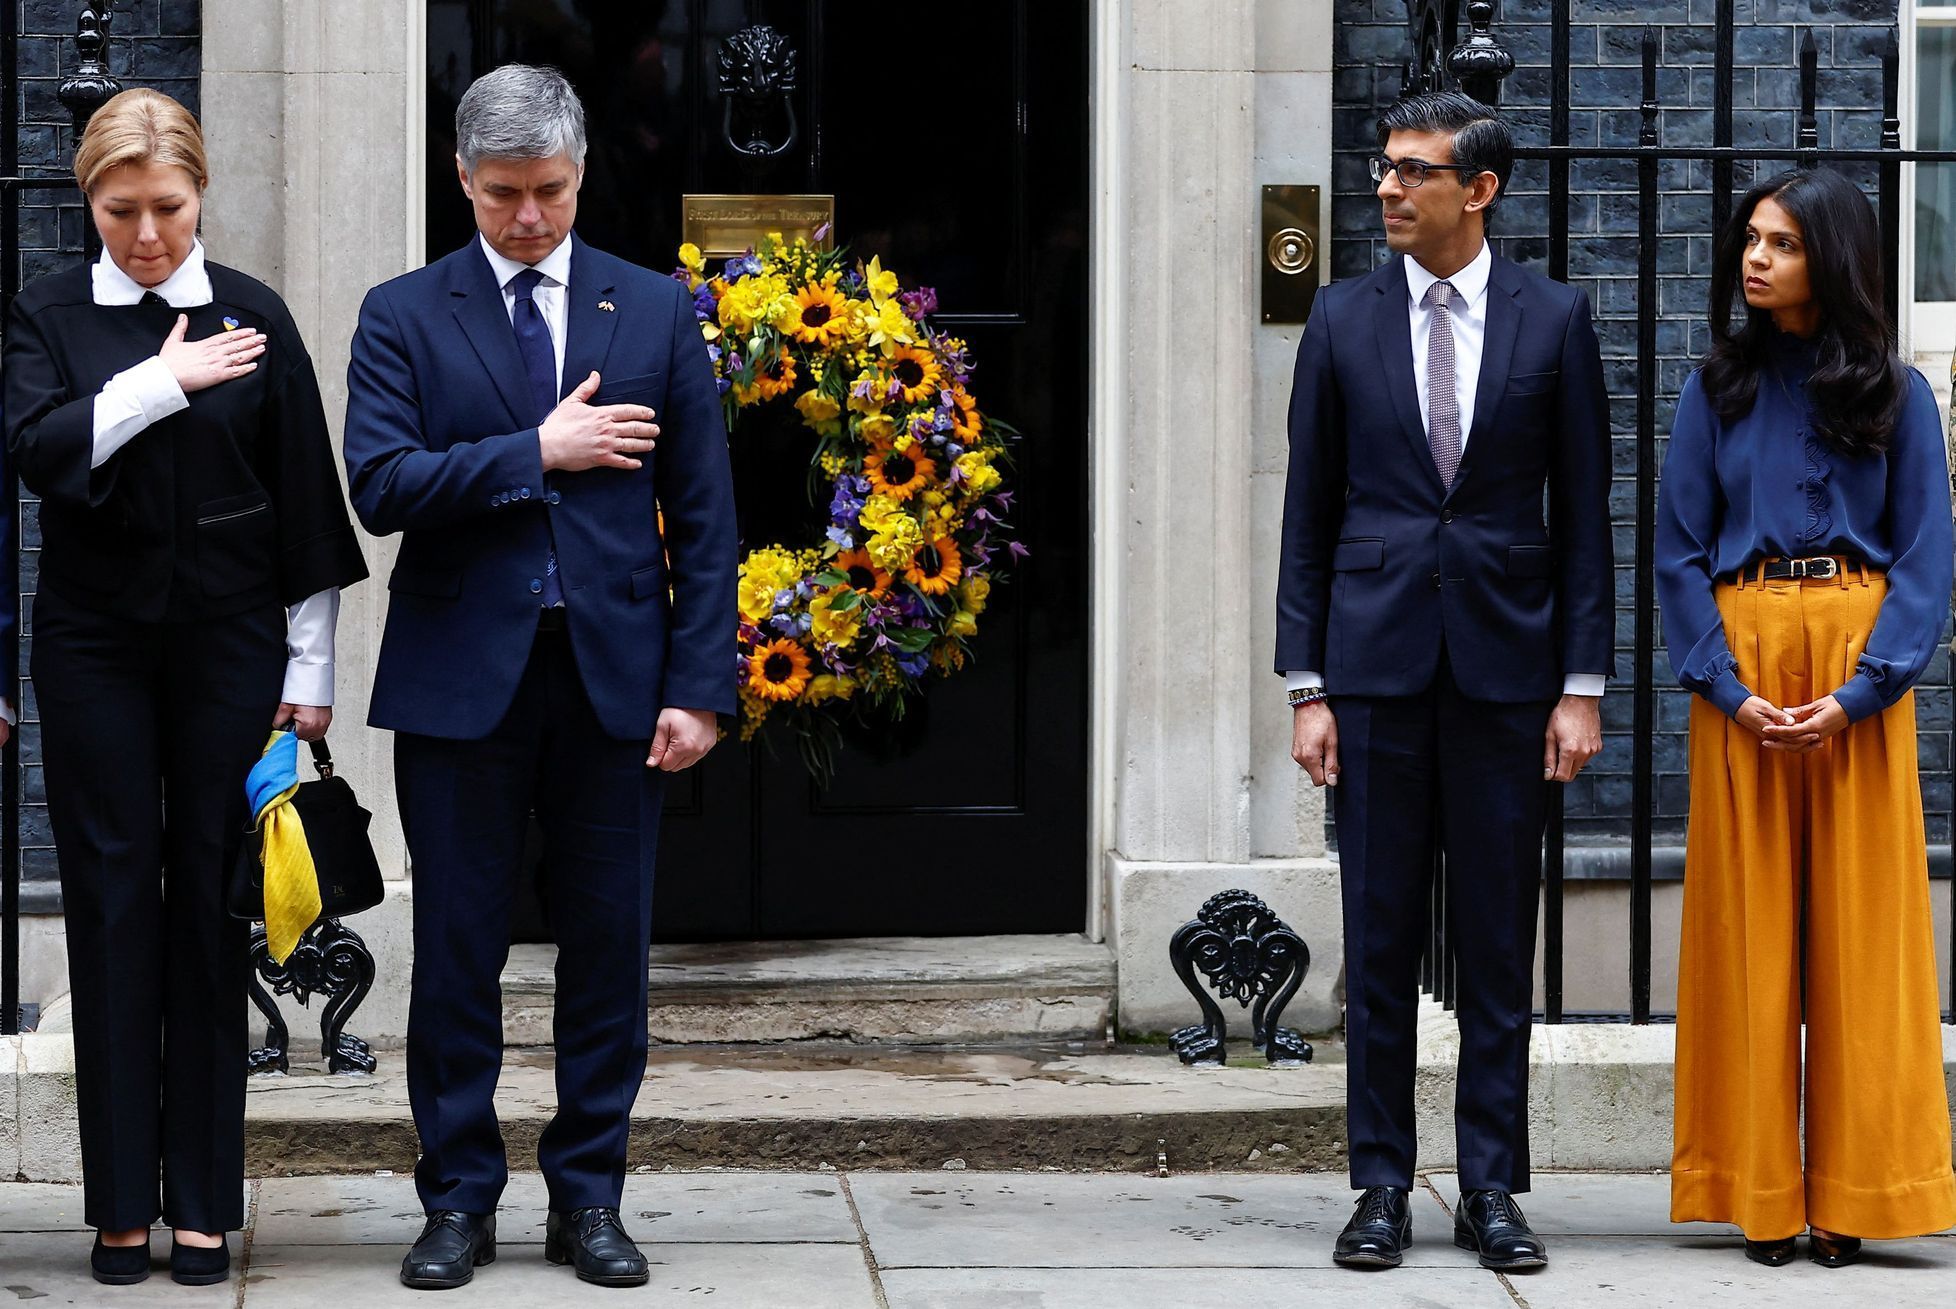 Minuta ticha před sídlem britského premiéra.